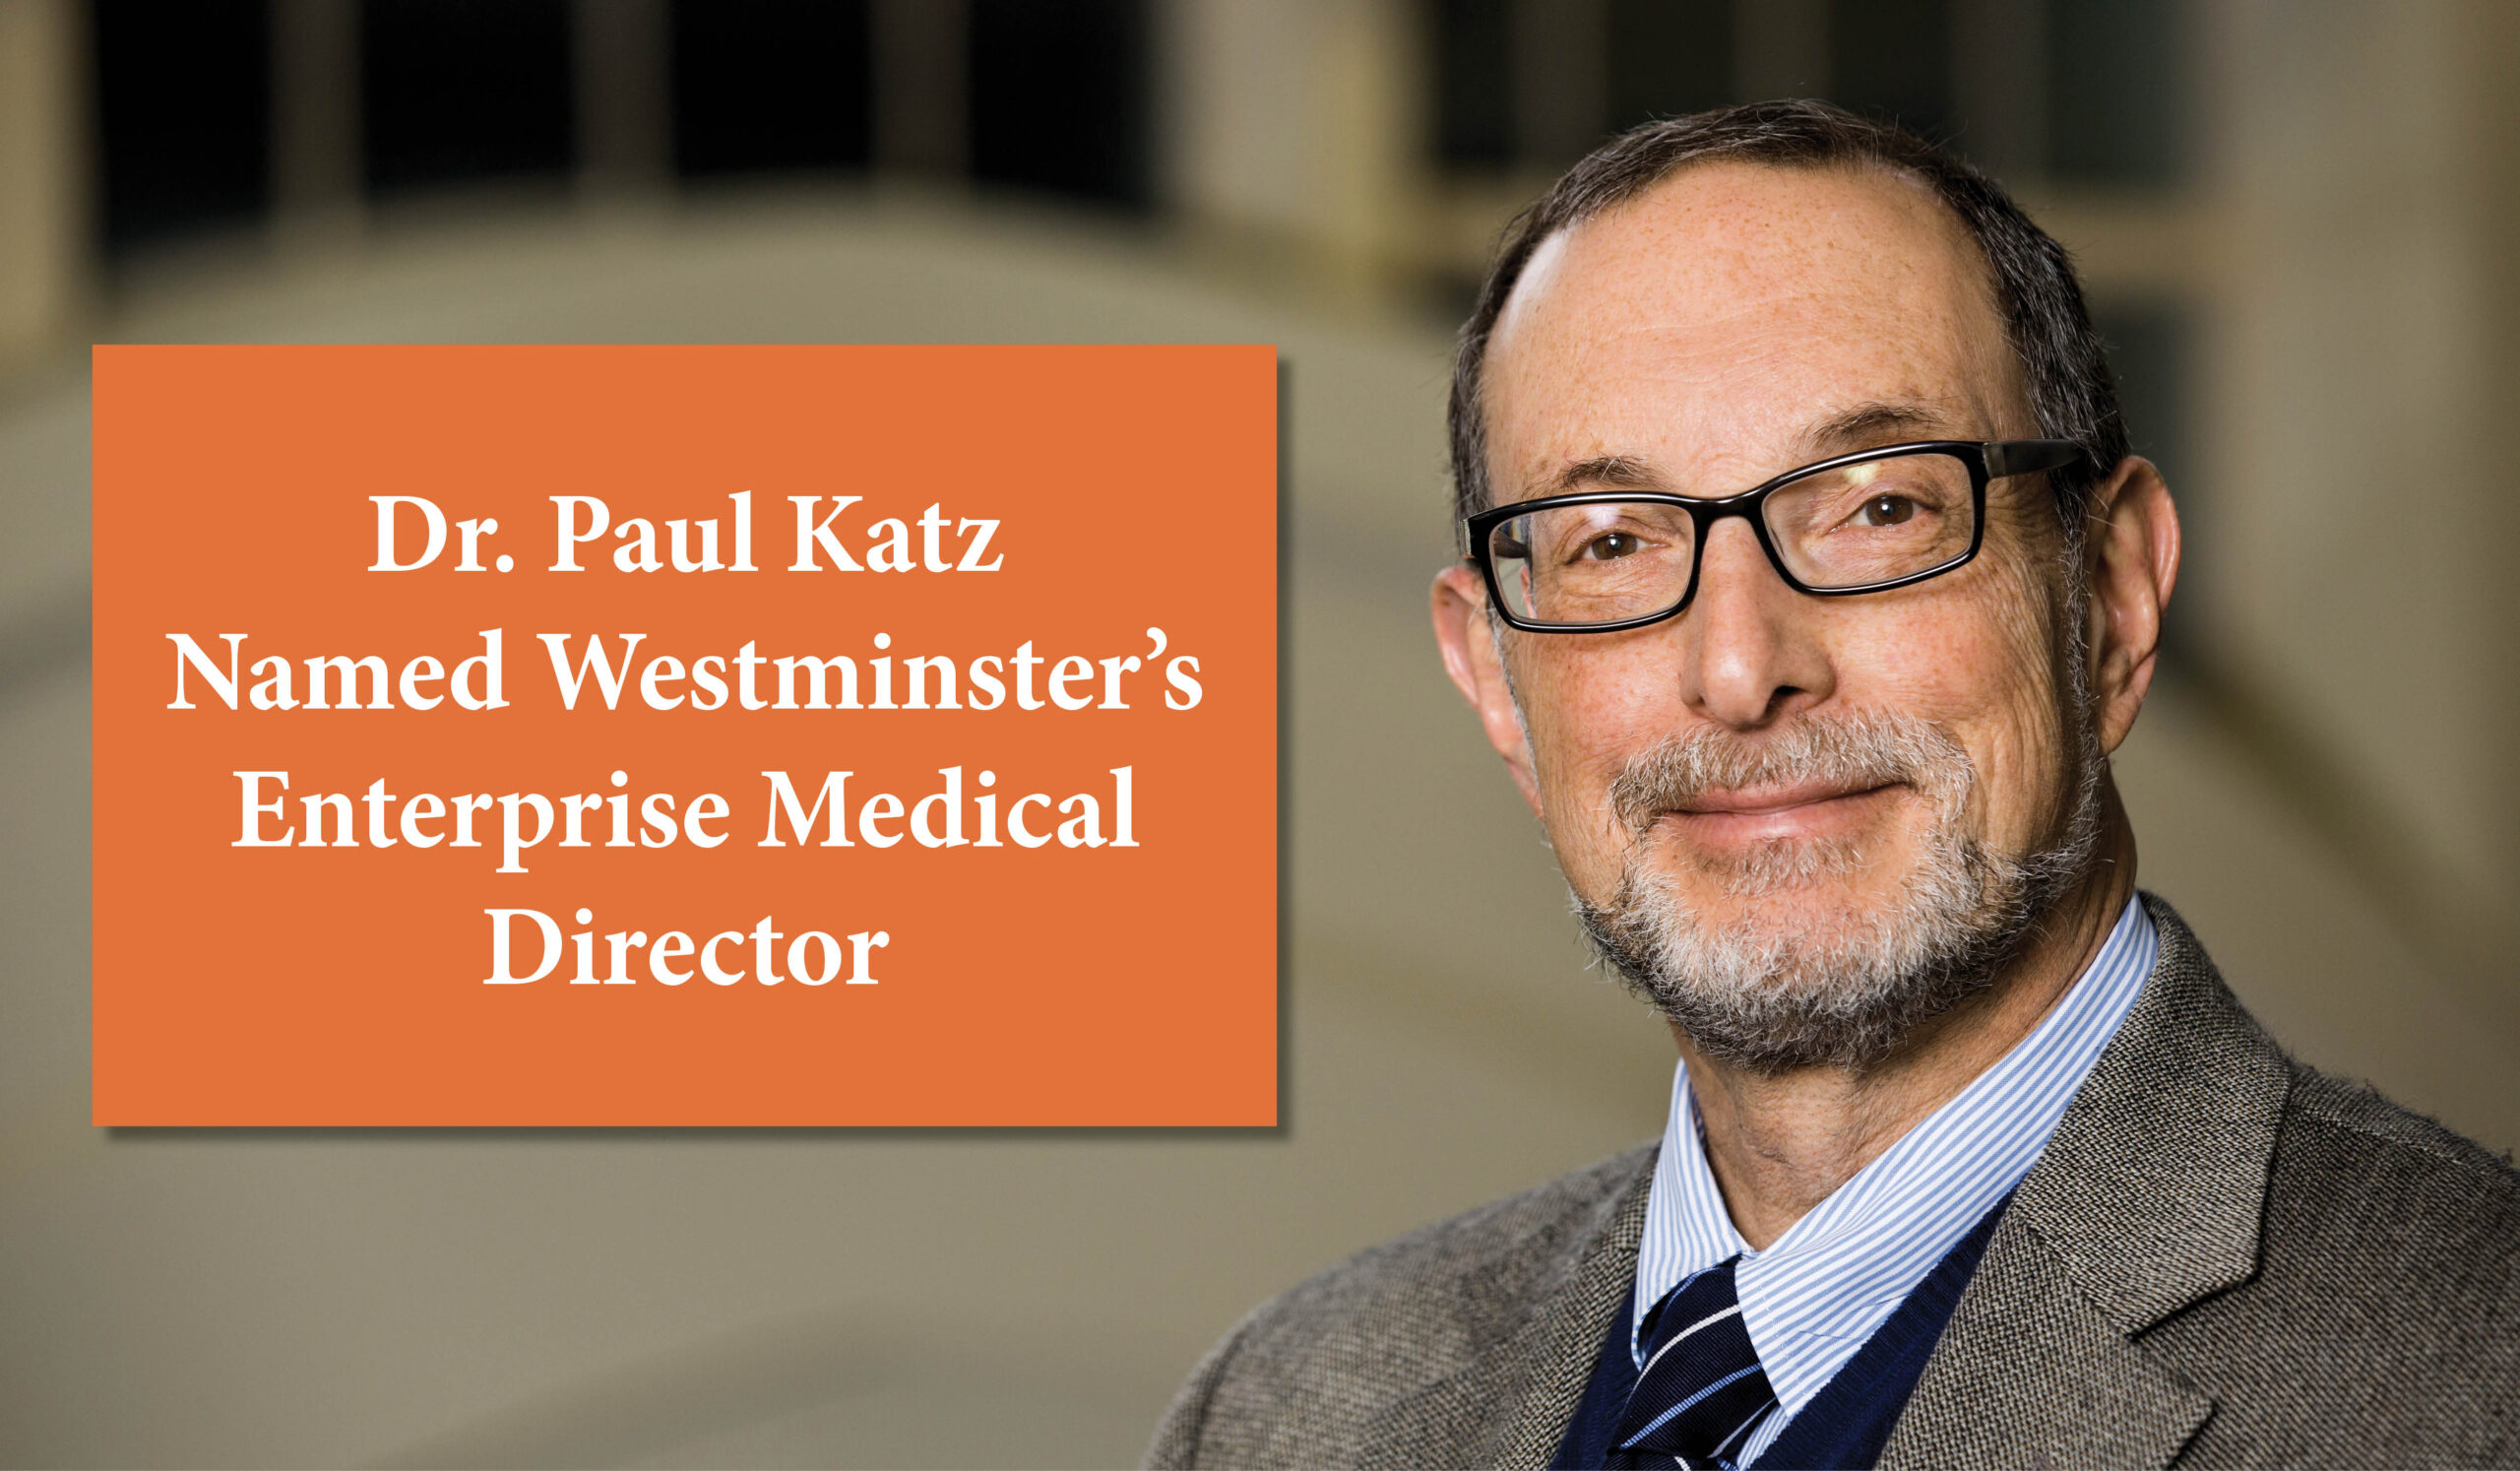 Dr. Paul Katz named Westminster's Enterprise Medical Director